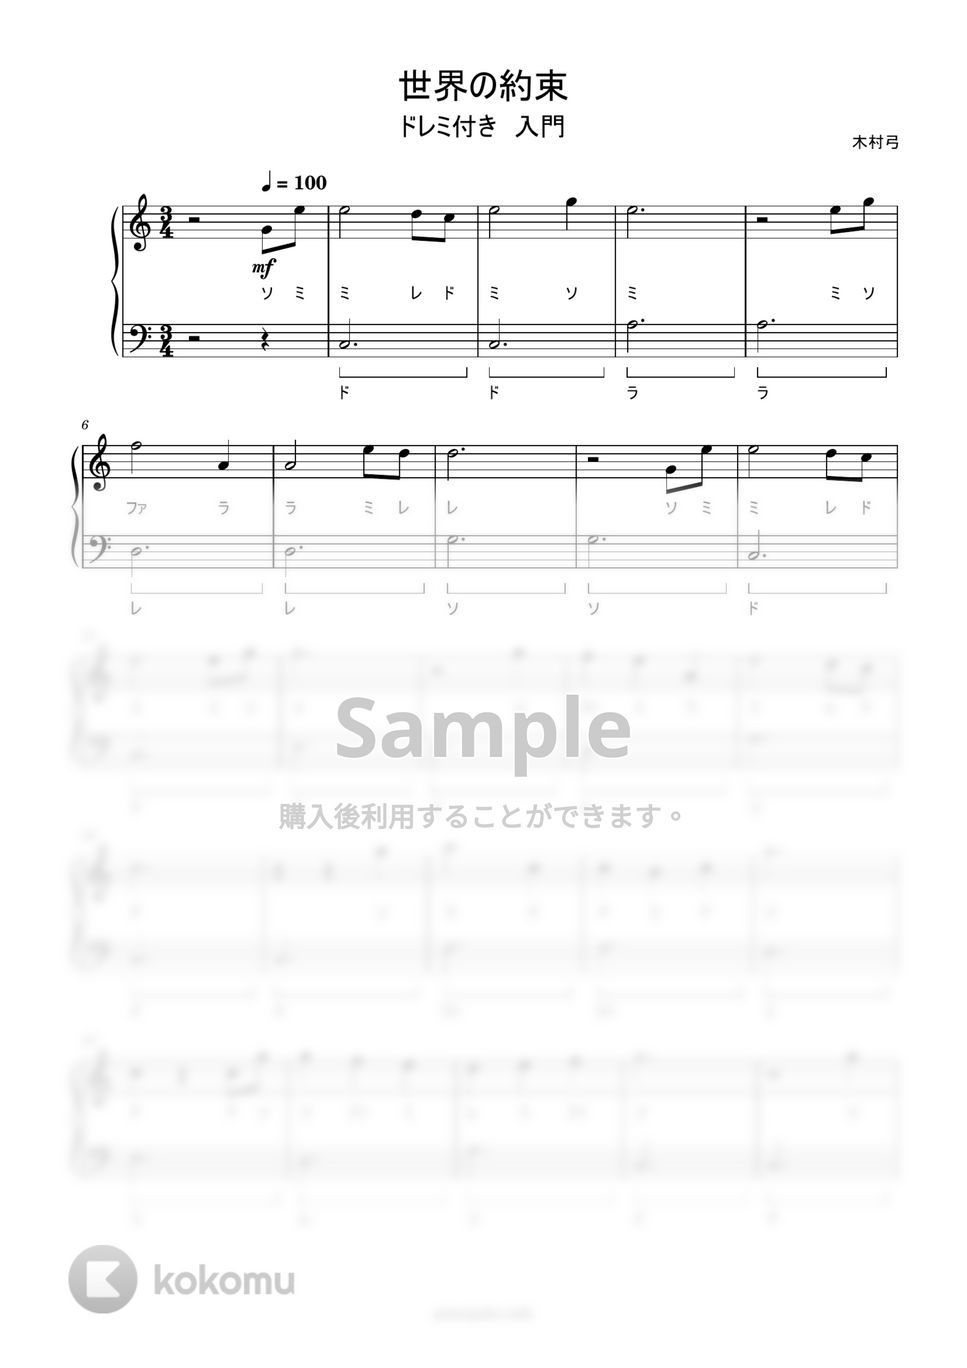 倍賞千恵子 - 世界の約束 (ドレミ付き簡単楽譜) by ピアノ塾